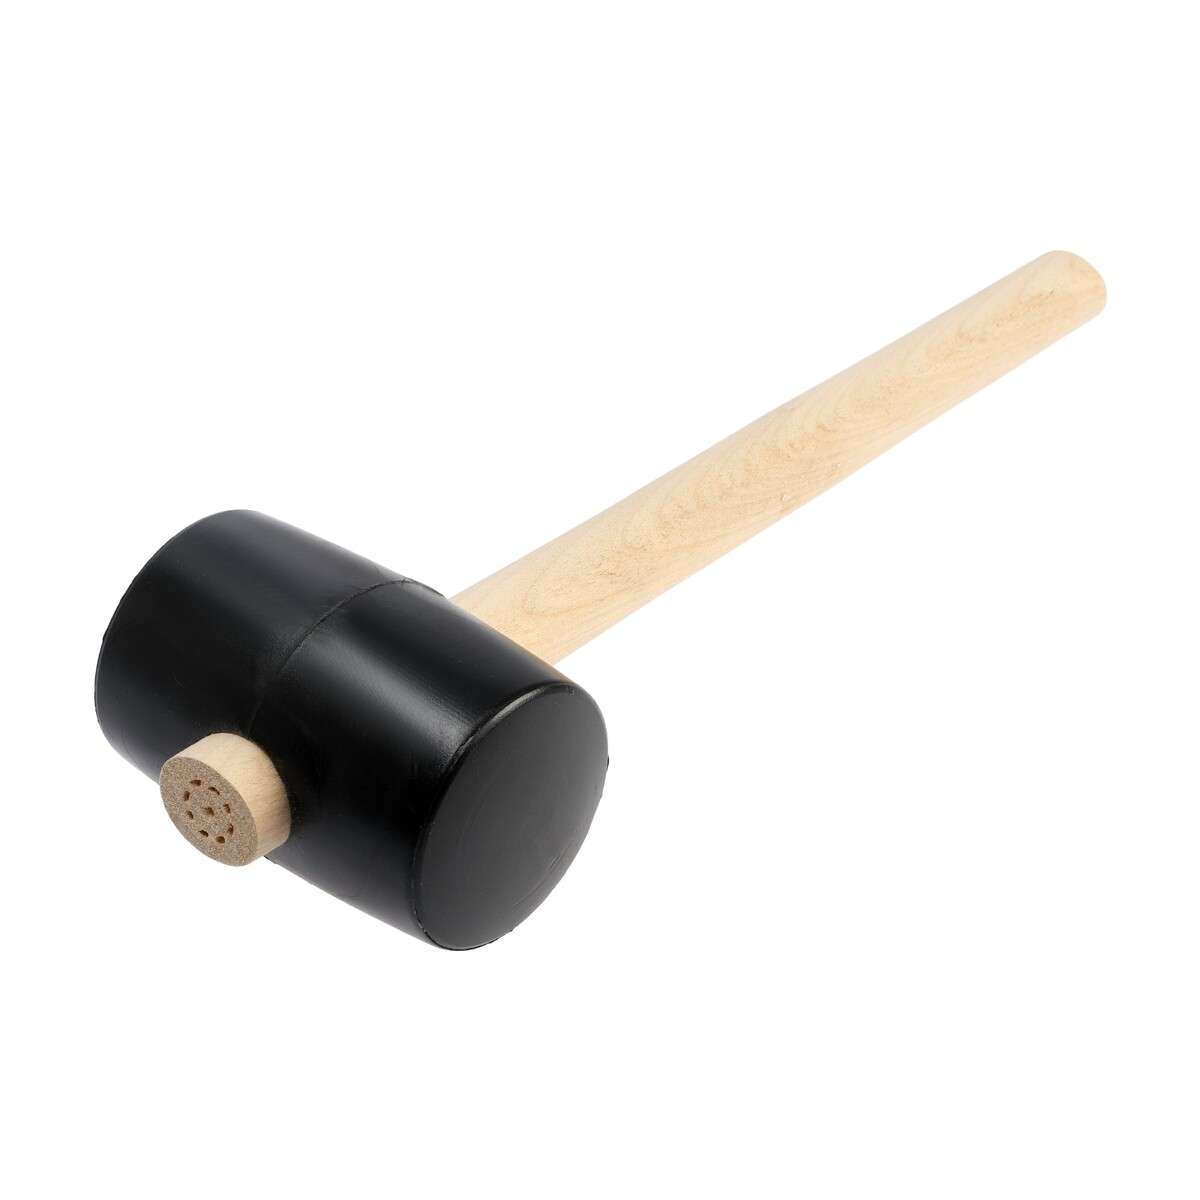 Киянка лом, деревянная рукоятка, черная резина, 65 мм, 500 г киянка тундра деревянная рукоятка черная резина 50 мм 340 г